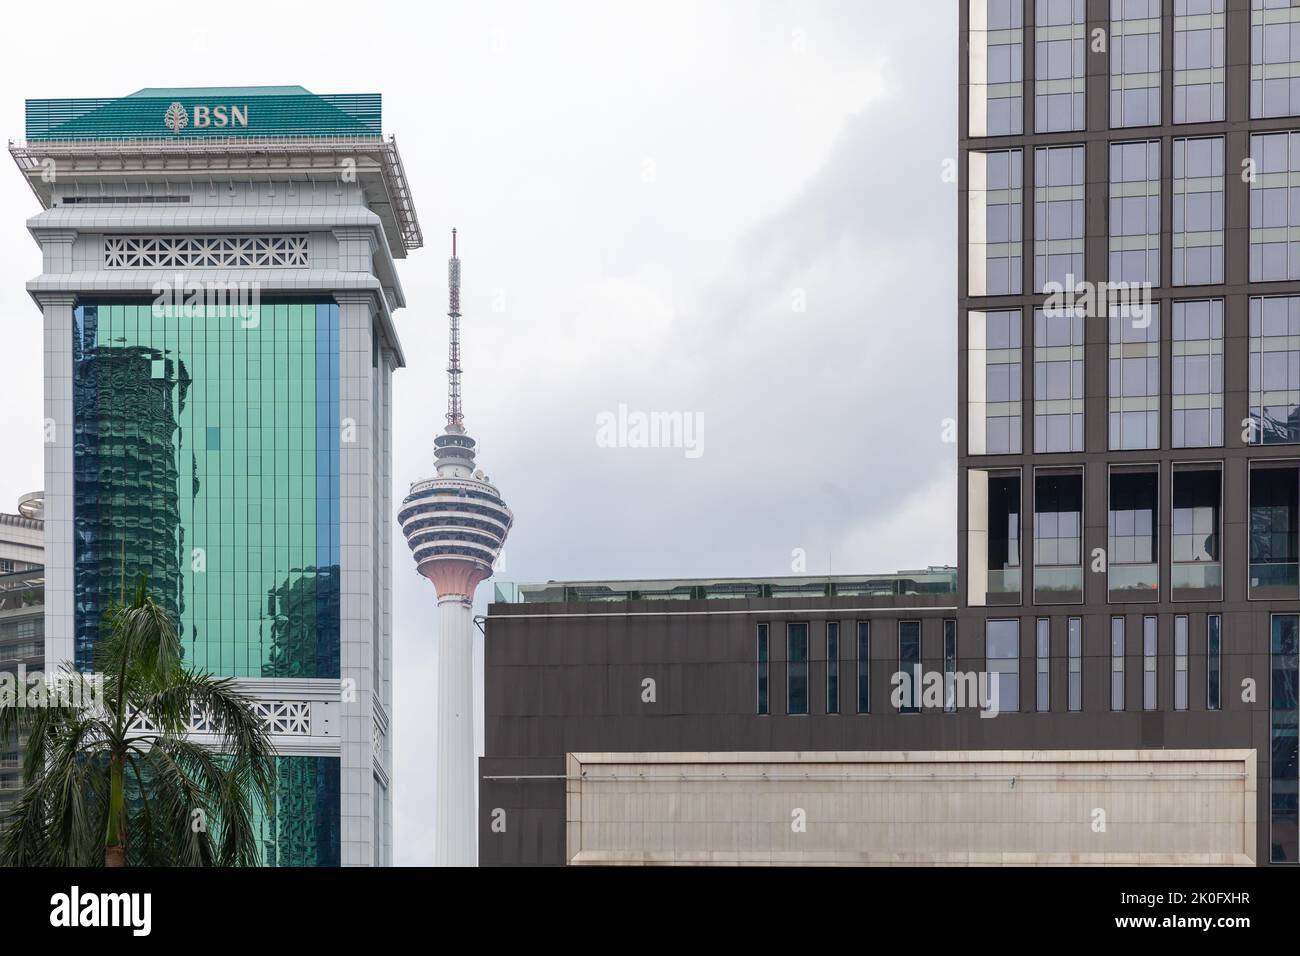 Kuala Lumpur, Malaisie - 25 novembre 2019 : paysage urbain avec de grands immeubles de bureaux et tour de télévision Banque D'Images